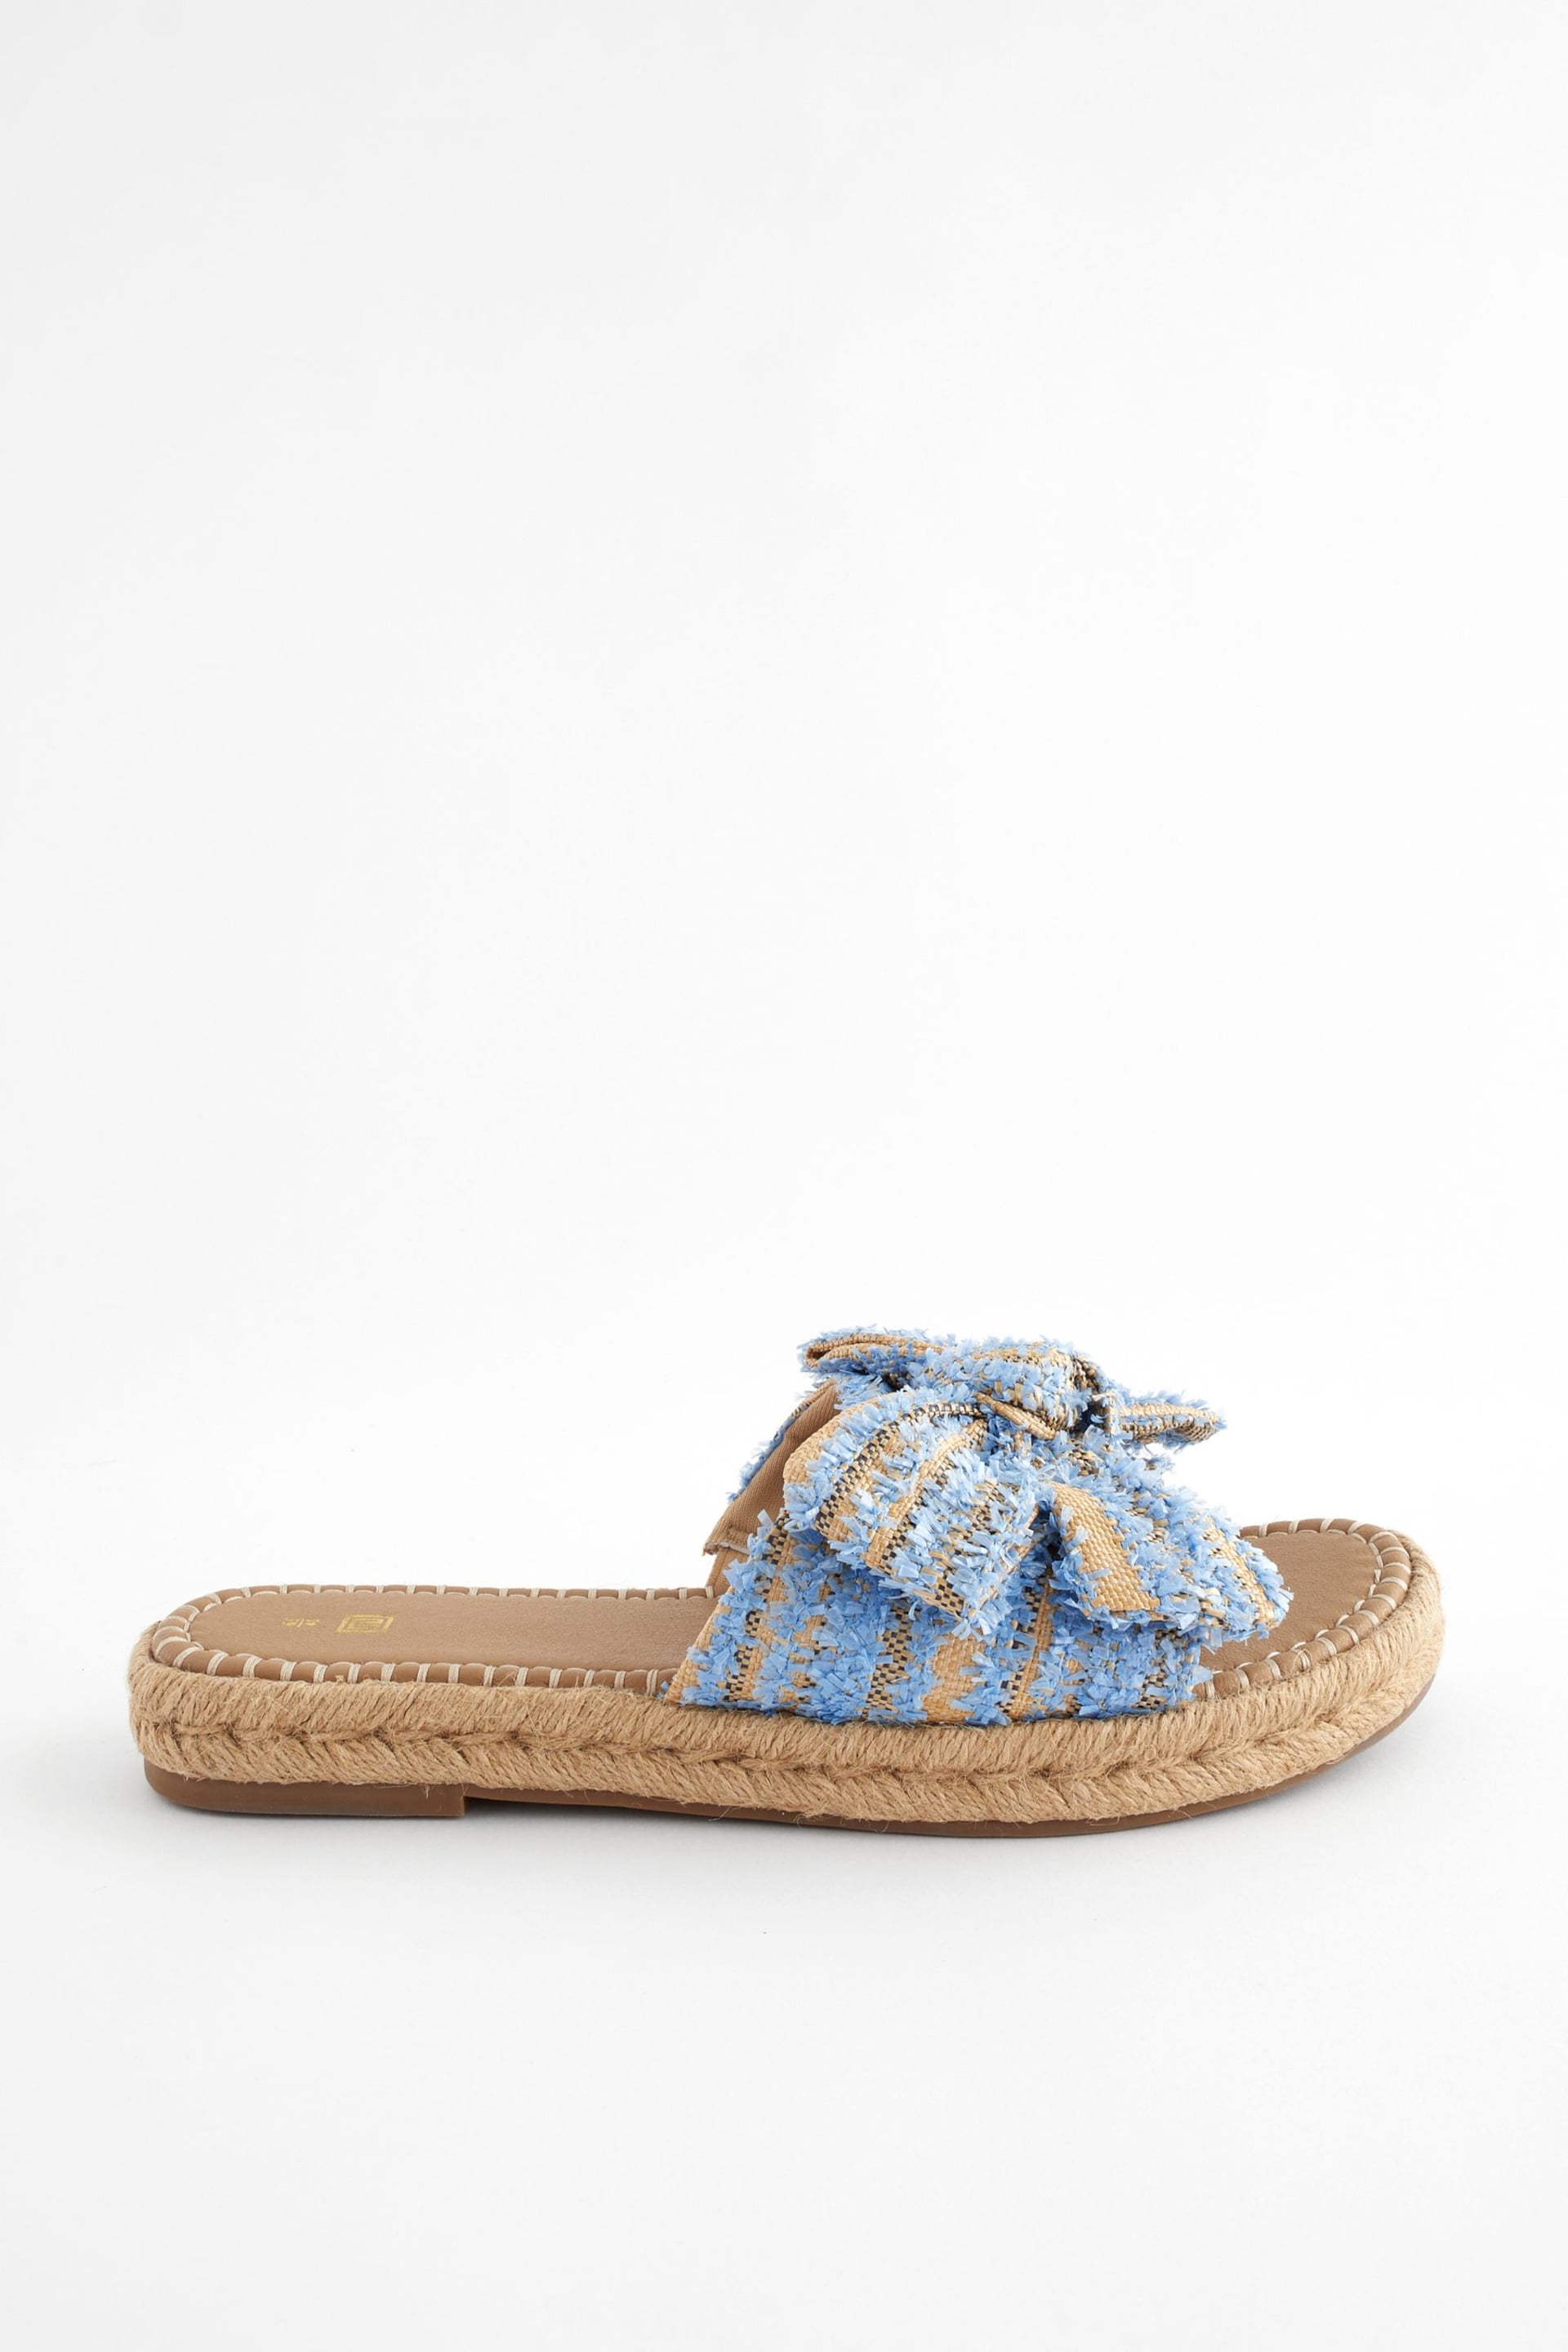 Blue Bow Flatform Espadrille Sandals - Image 2 of 7